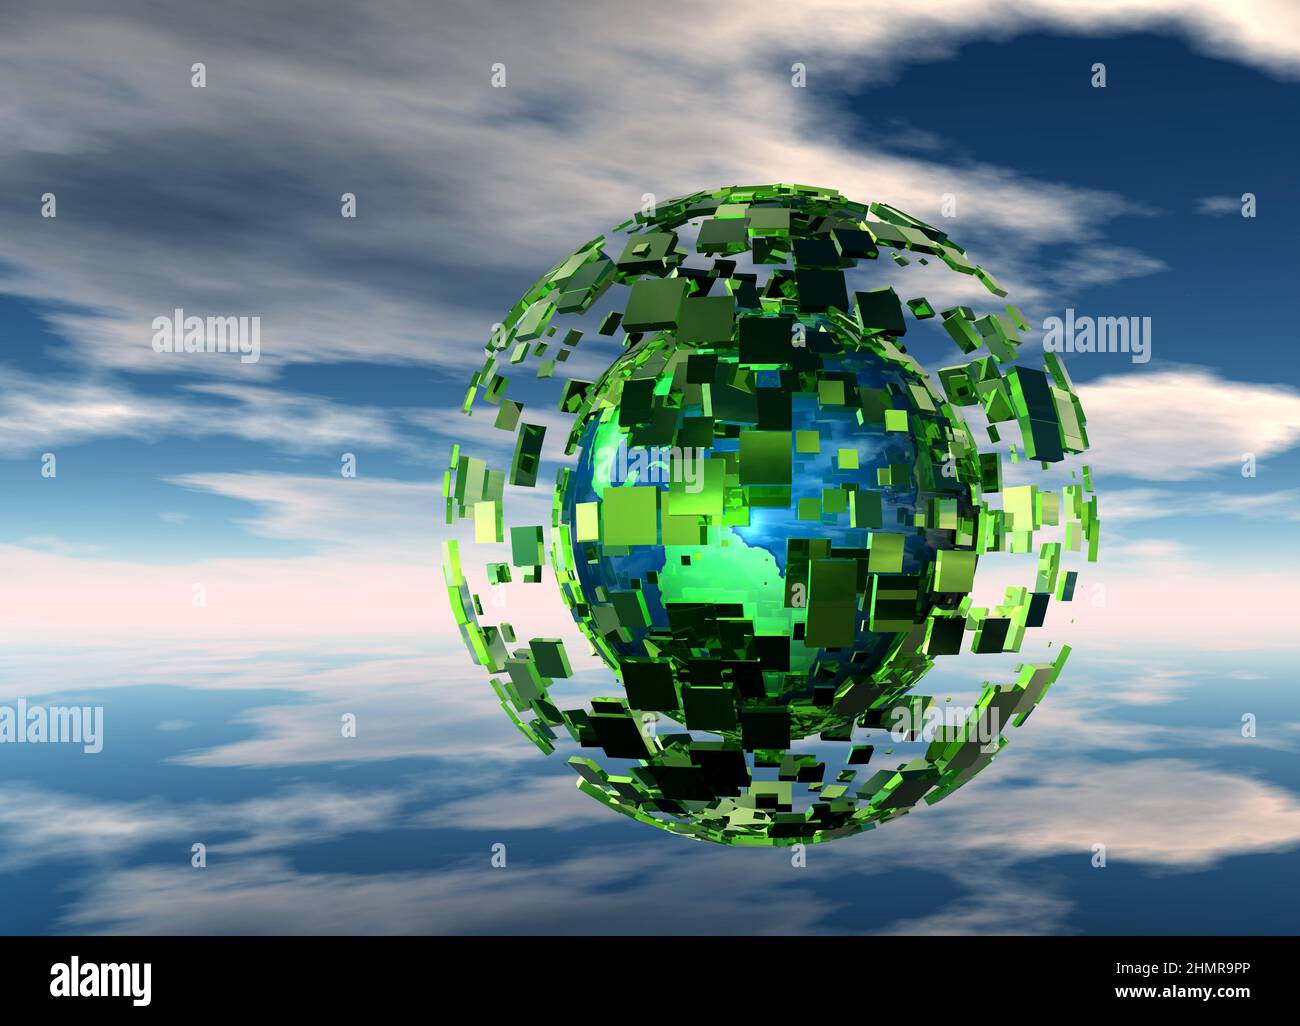 Global computing, conceptual illustration Stock Photo